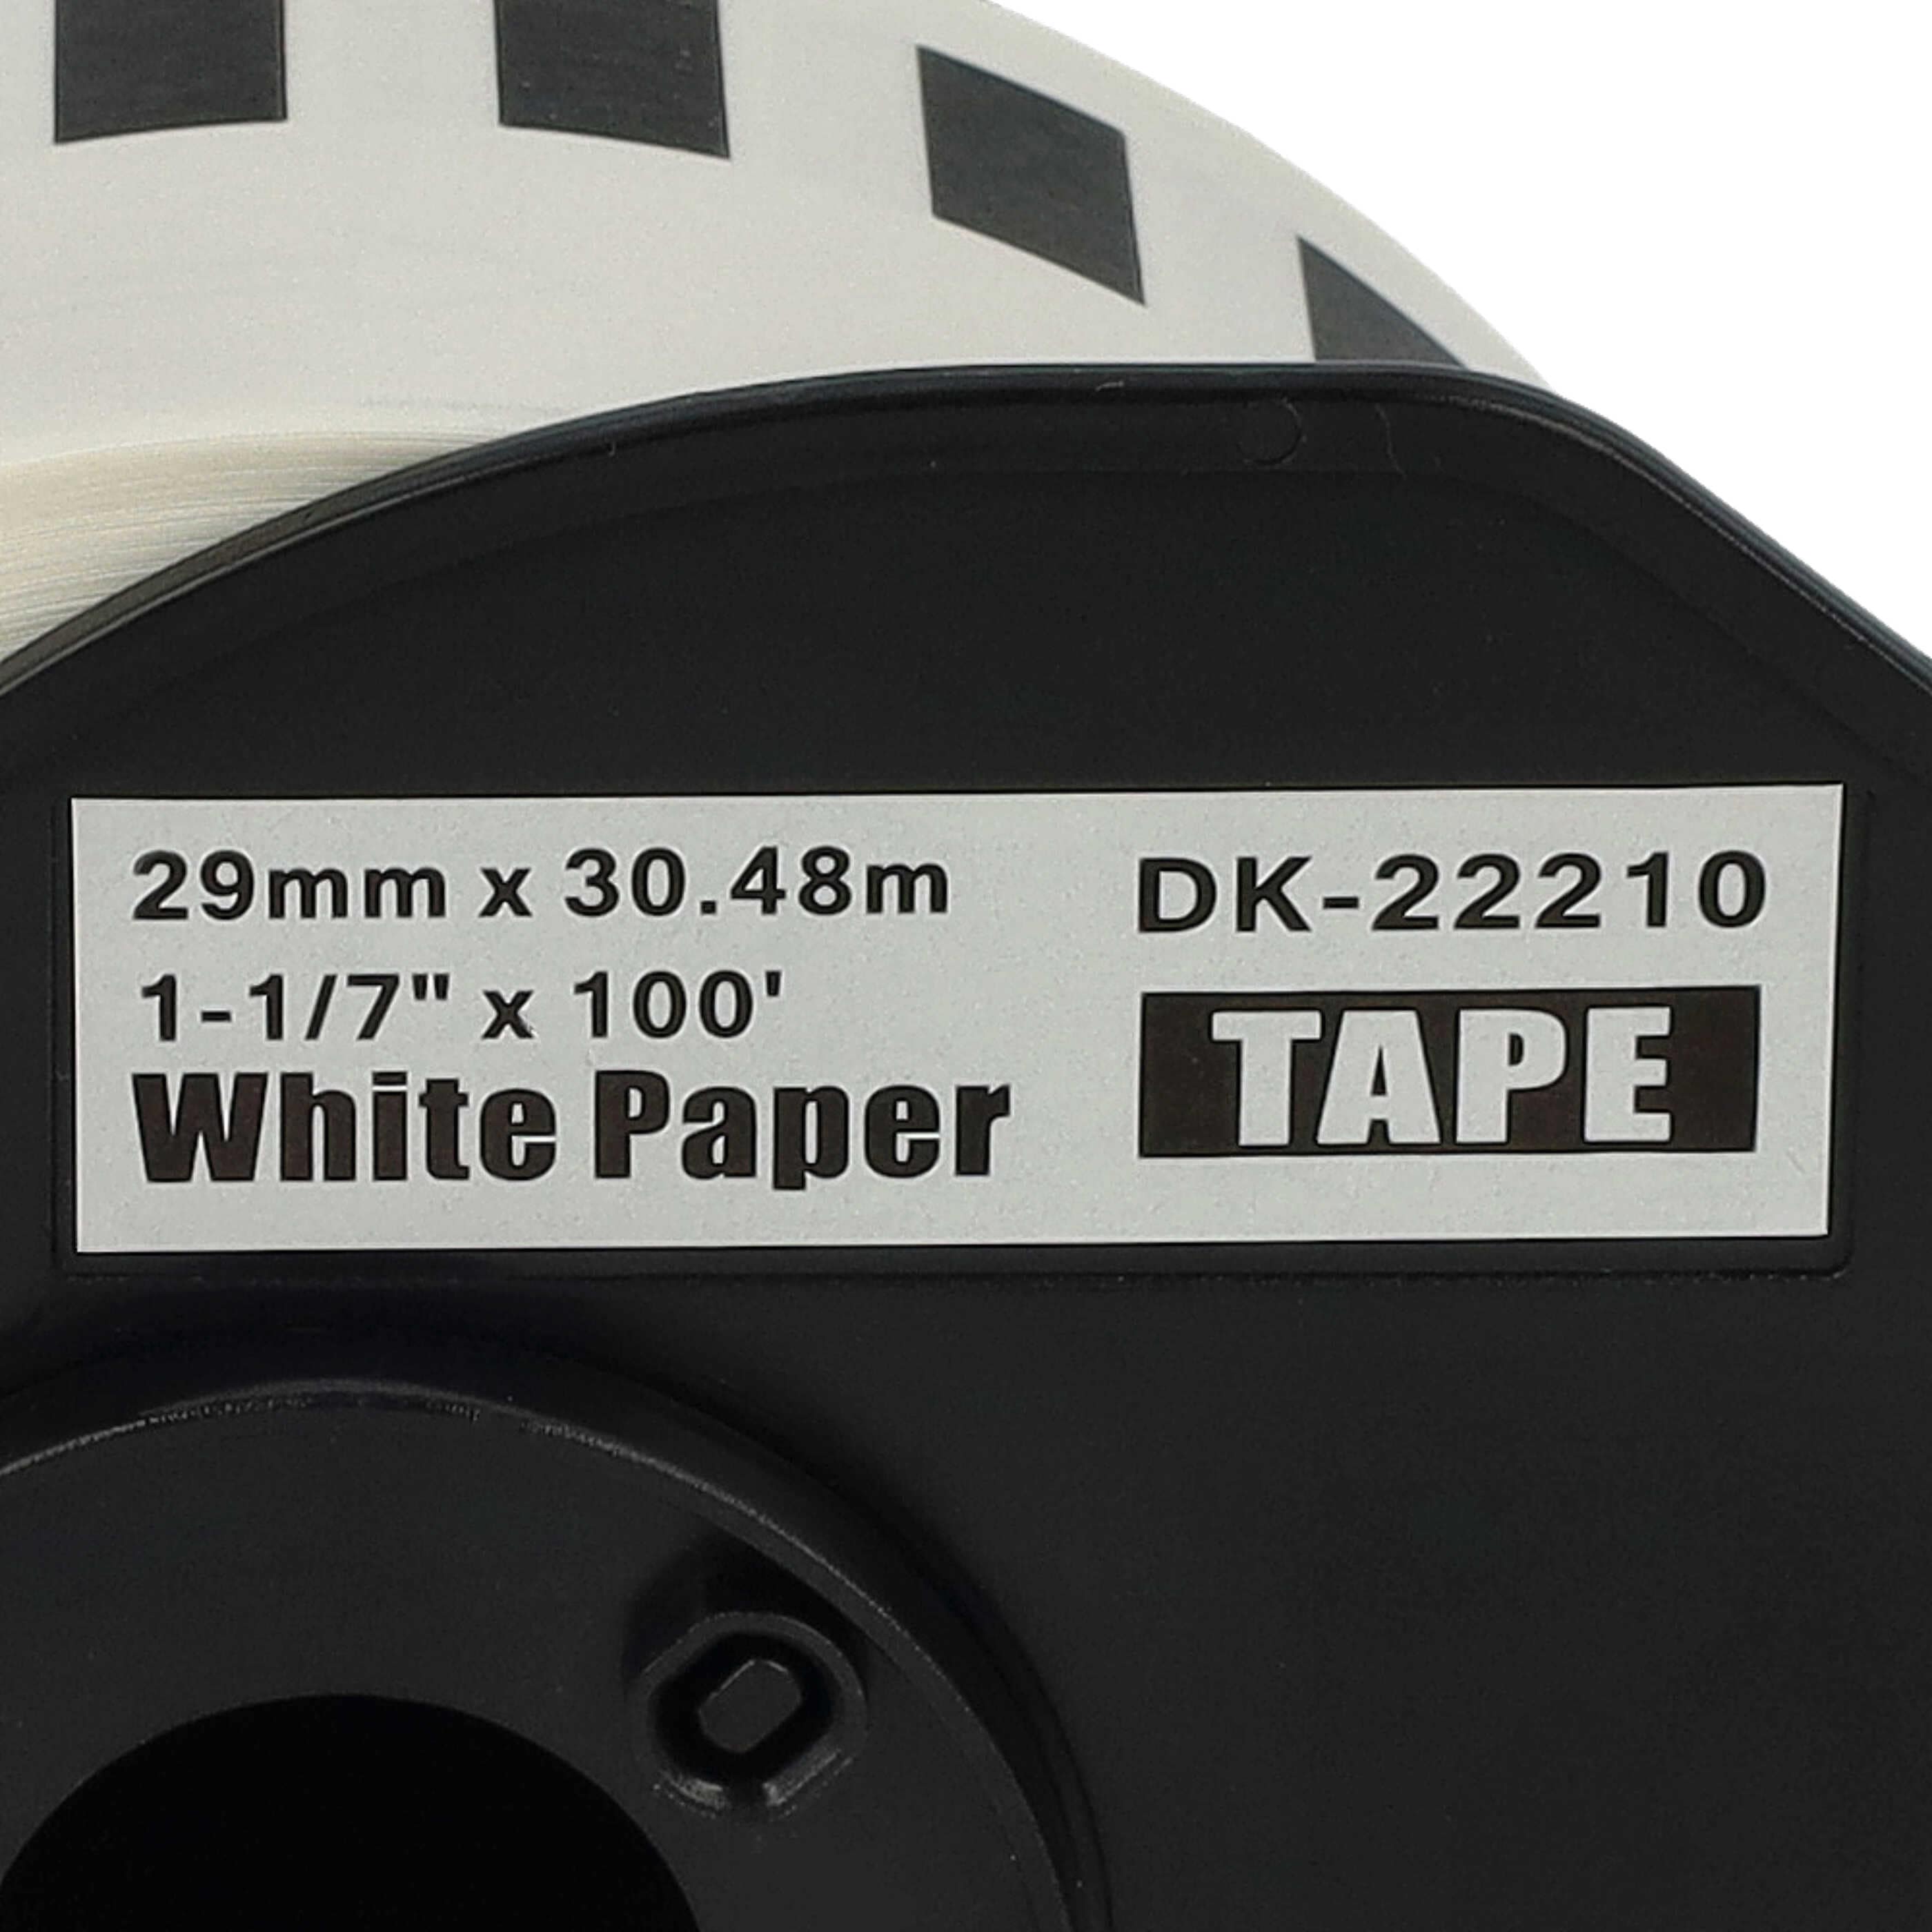 10x Etiketten als Ersatz für Brother DK-22210 für Etikettendrucker - 29mm x 30,48m + Halter